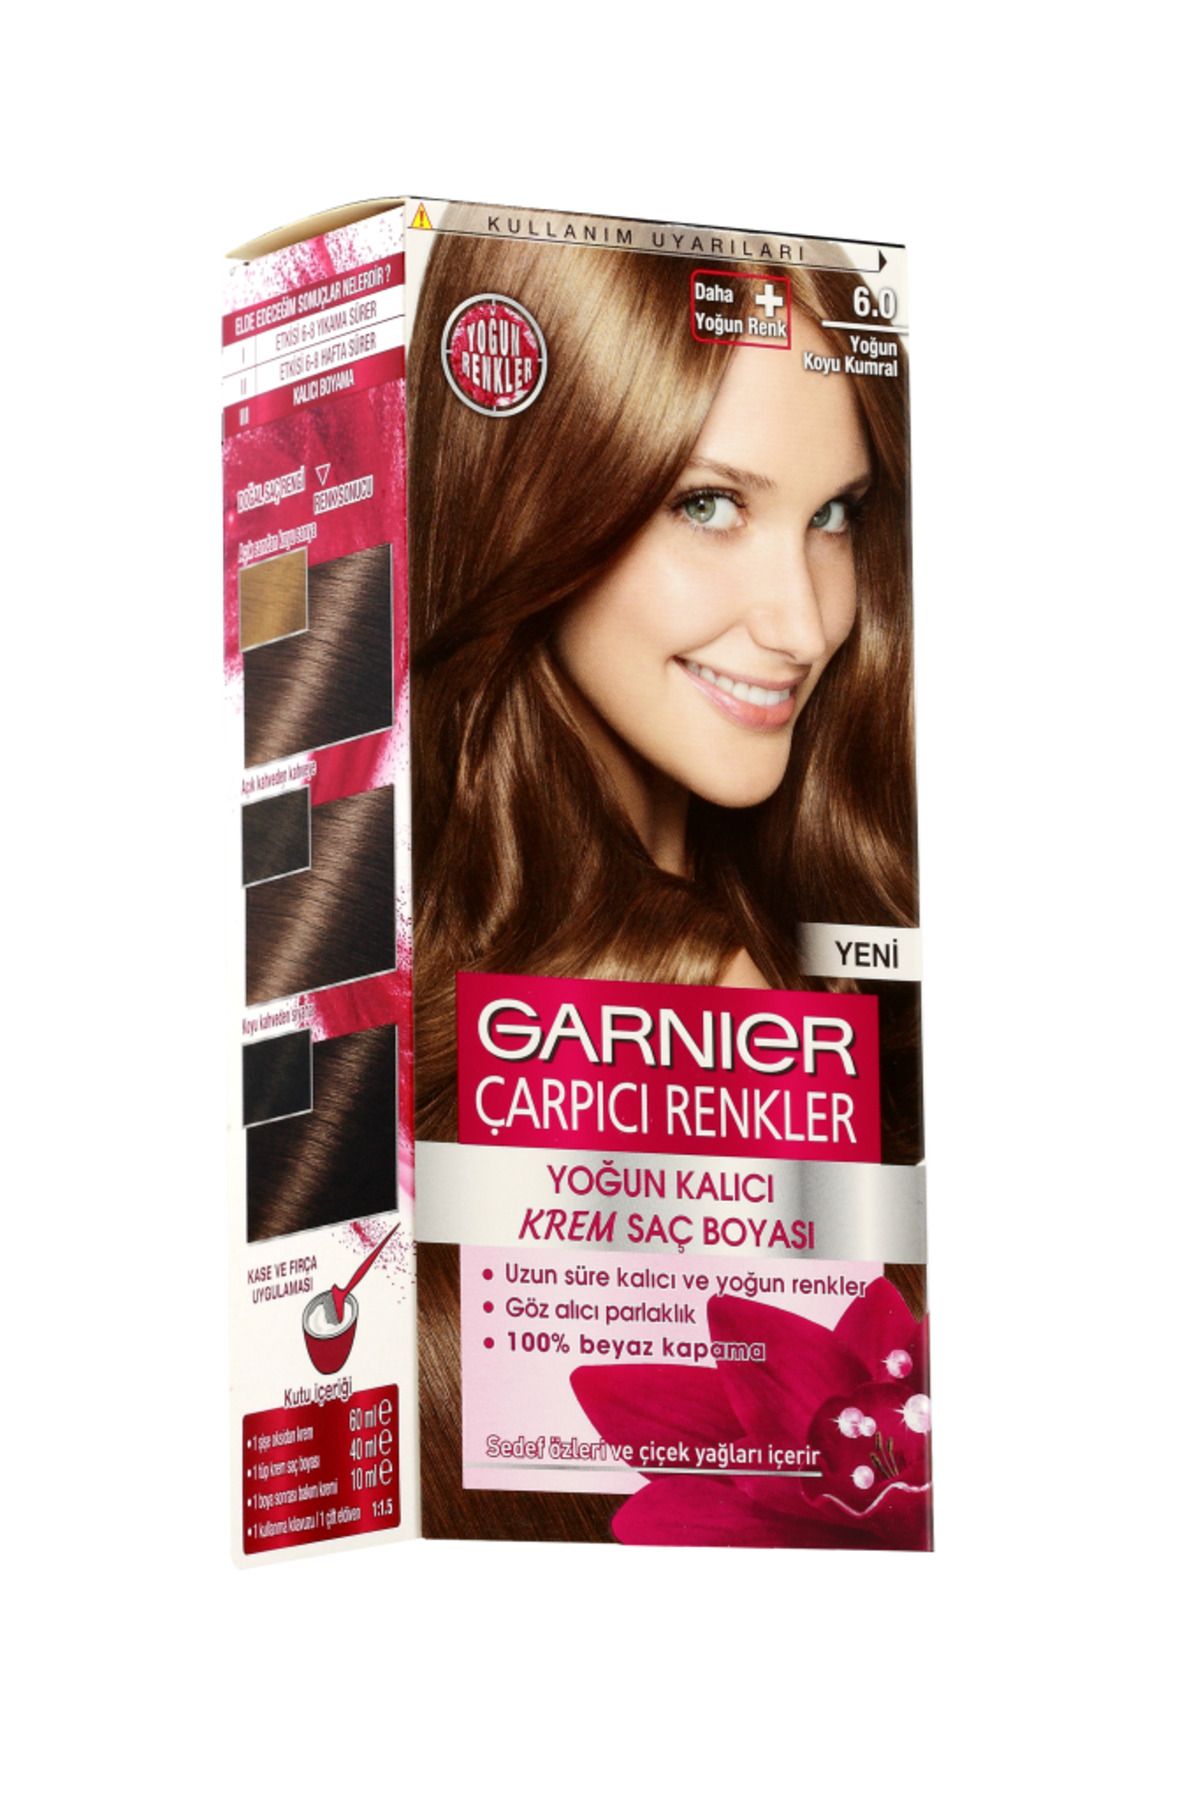 Garnier Çarpıcı Renkler Saç Boyası 6.0 Yoğun Koyu Kahve